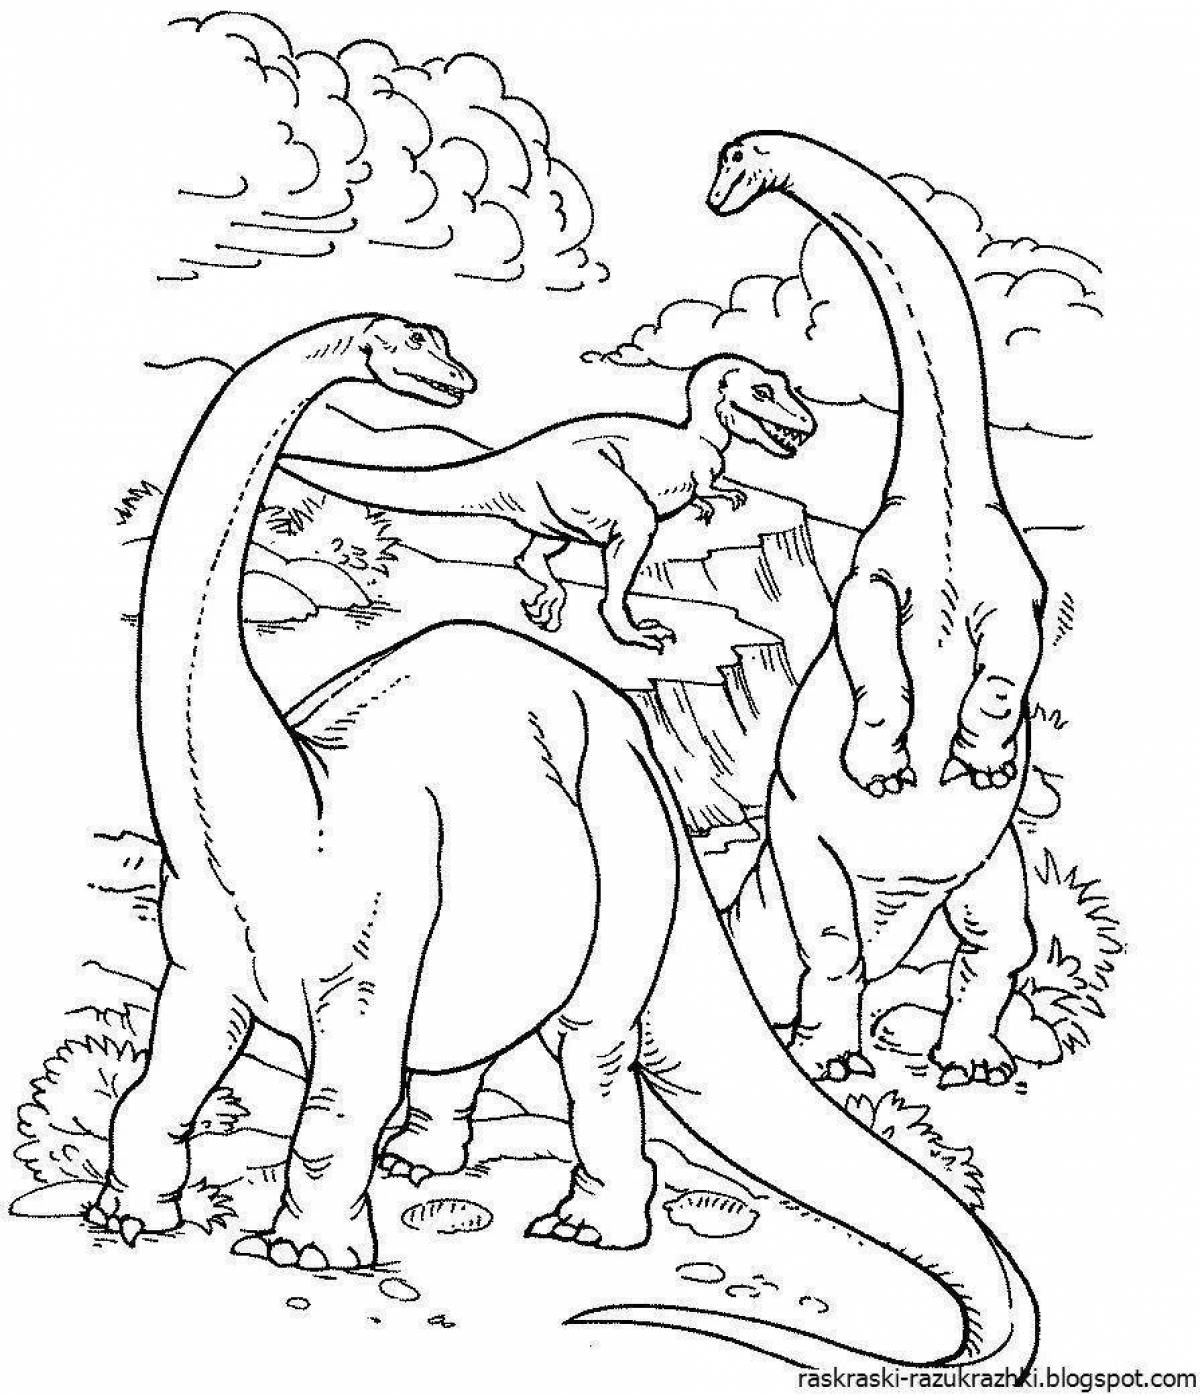 Великолепная раскраска динозавров для детей 7 лет